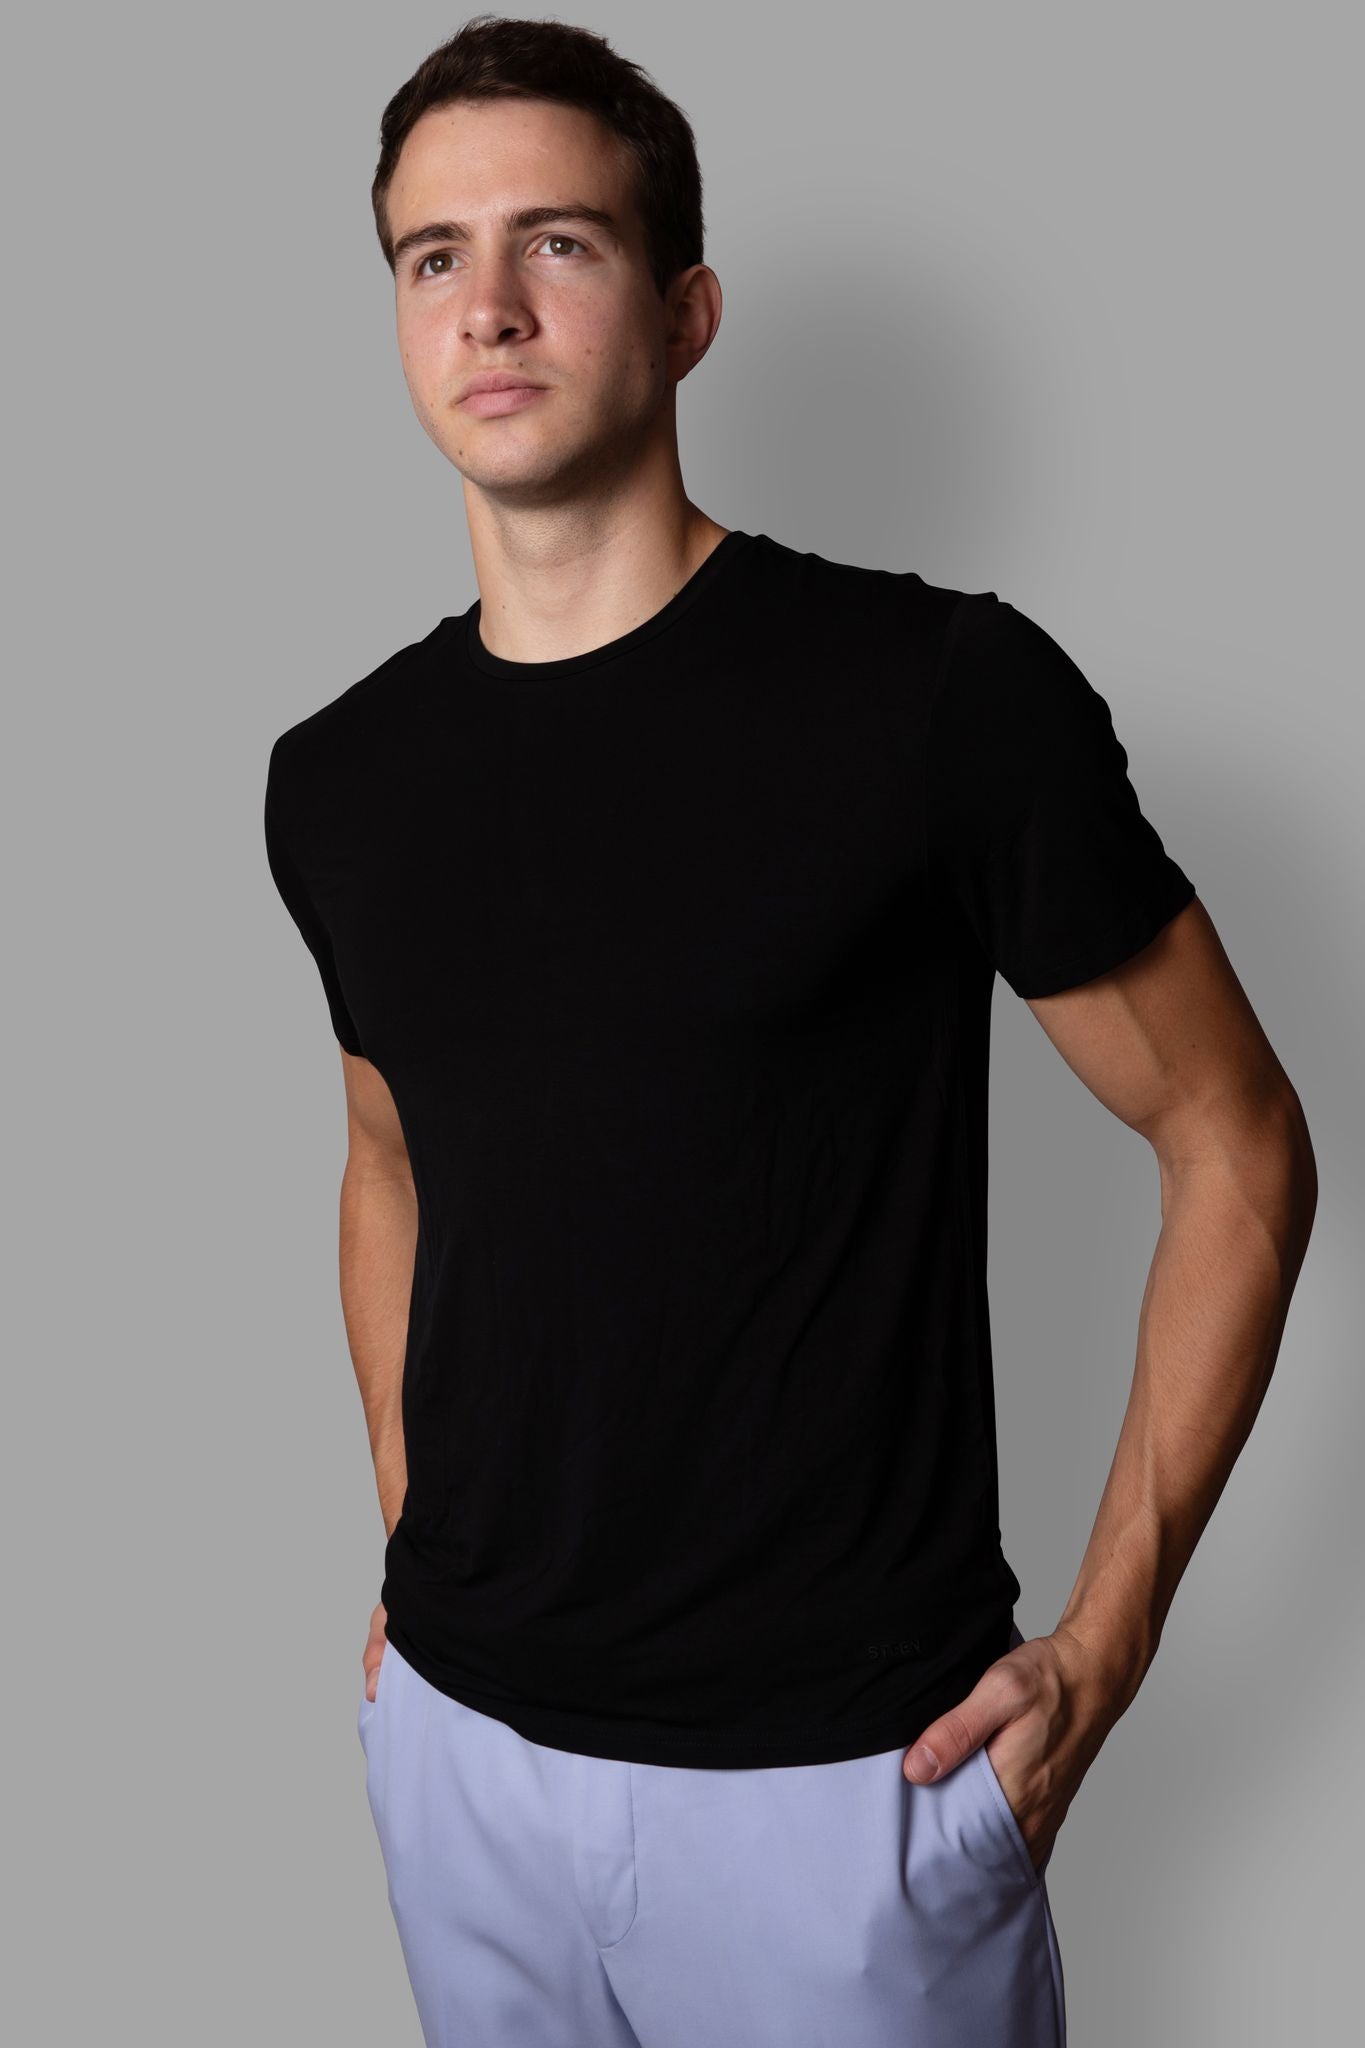 STEEN | Men's Black Bamboo T-Shirt